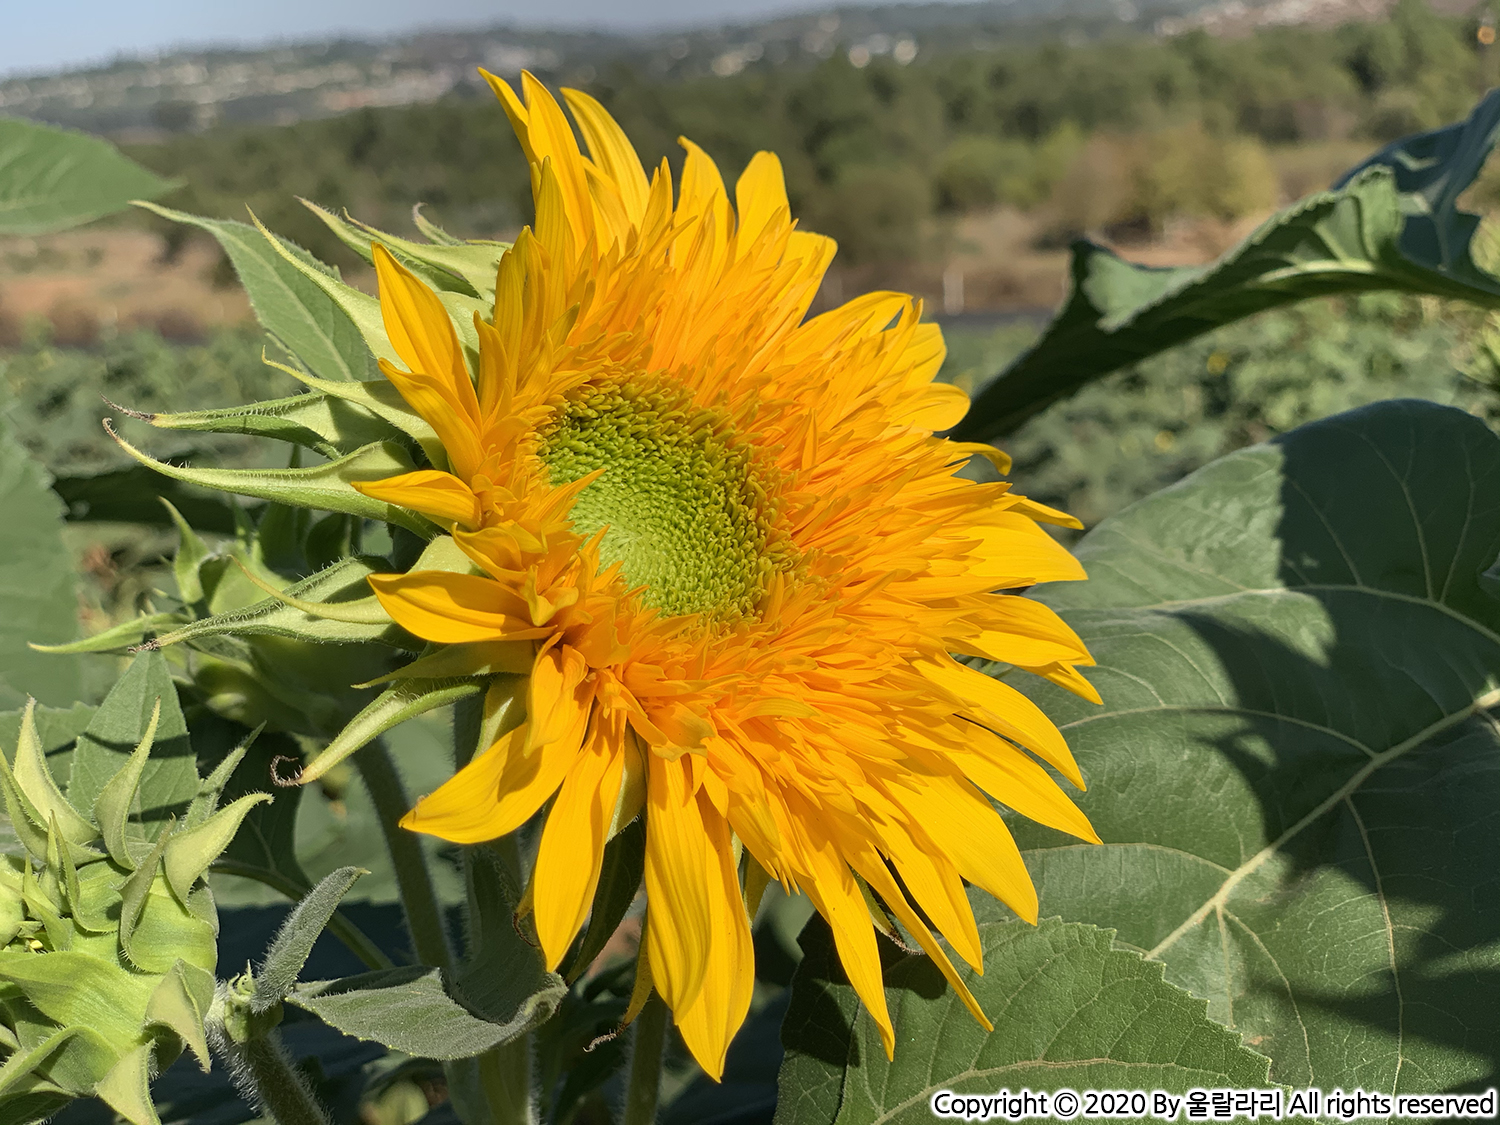 캘리포니아 해바라기 구경하기 좋은 곳 the best sunflower fields in southern california